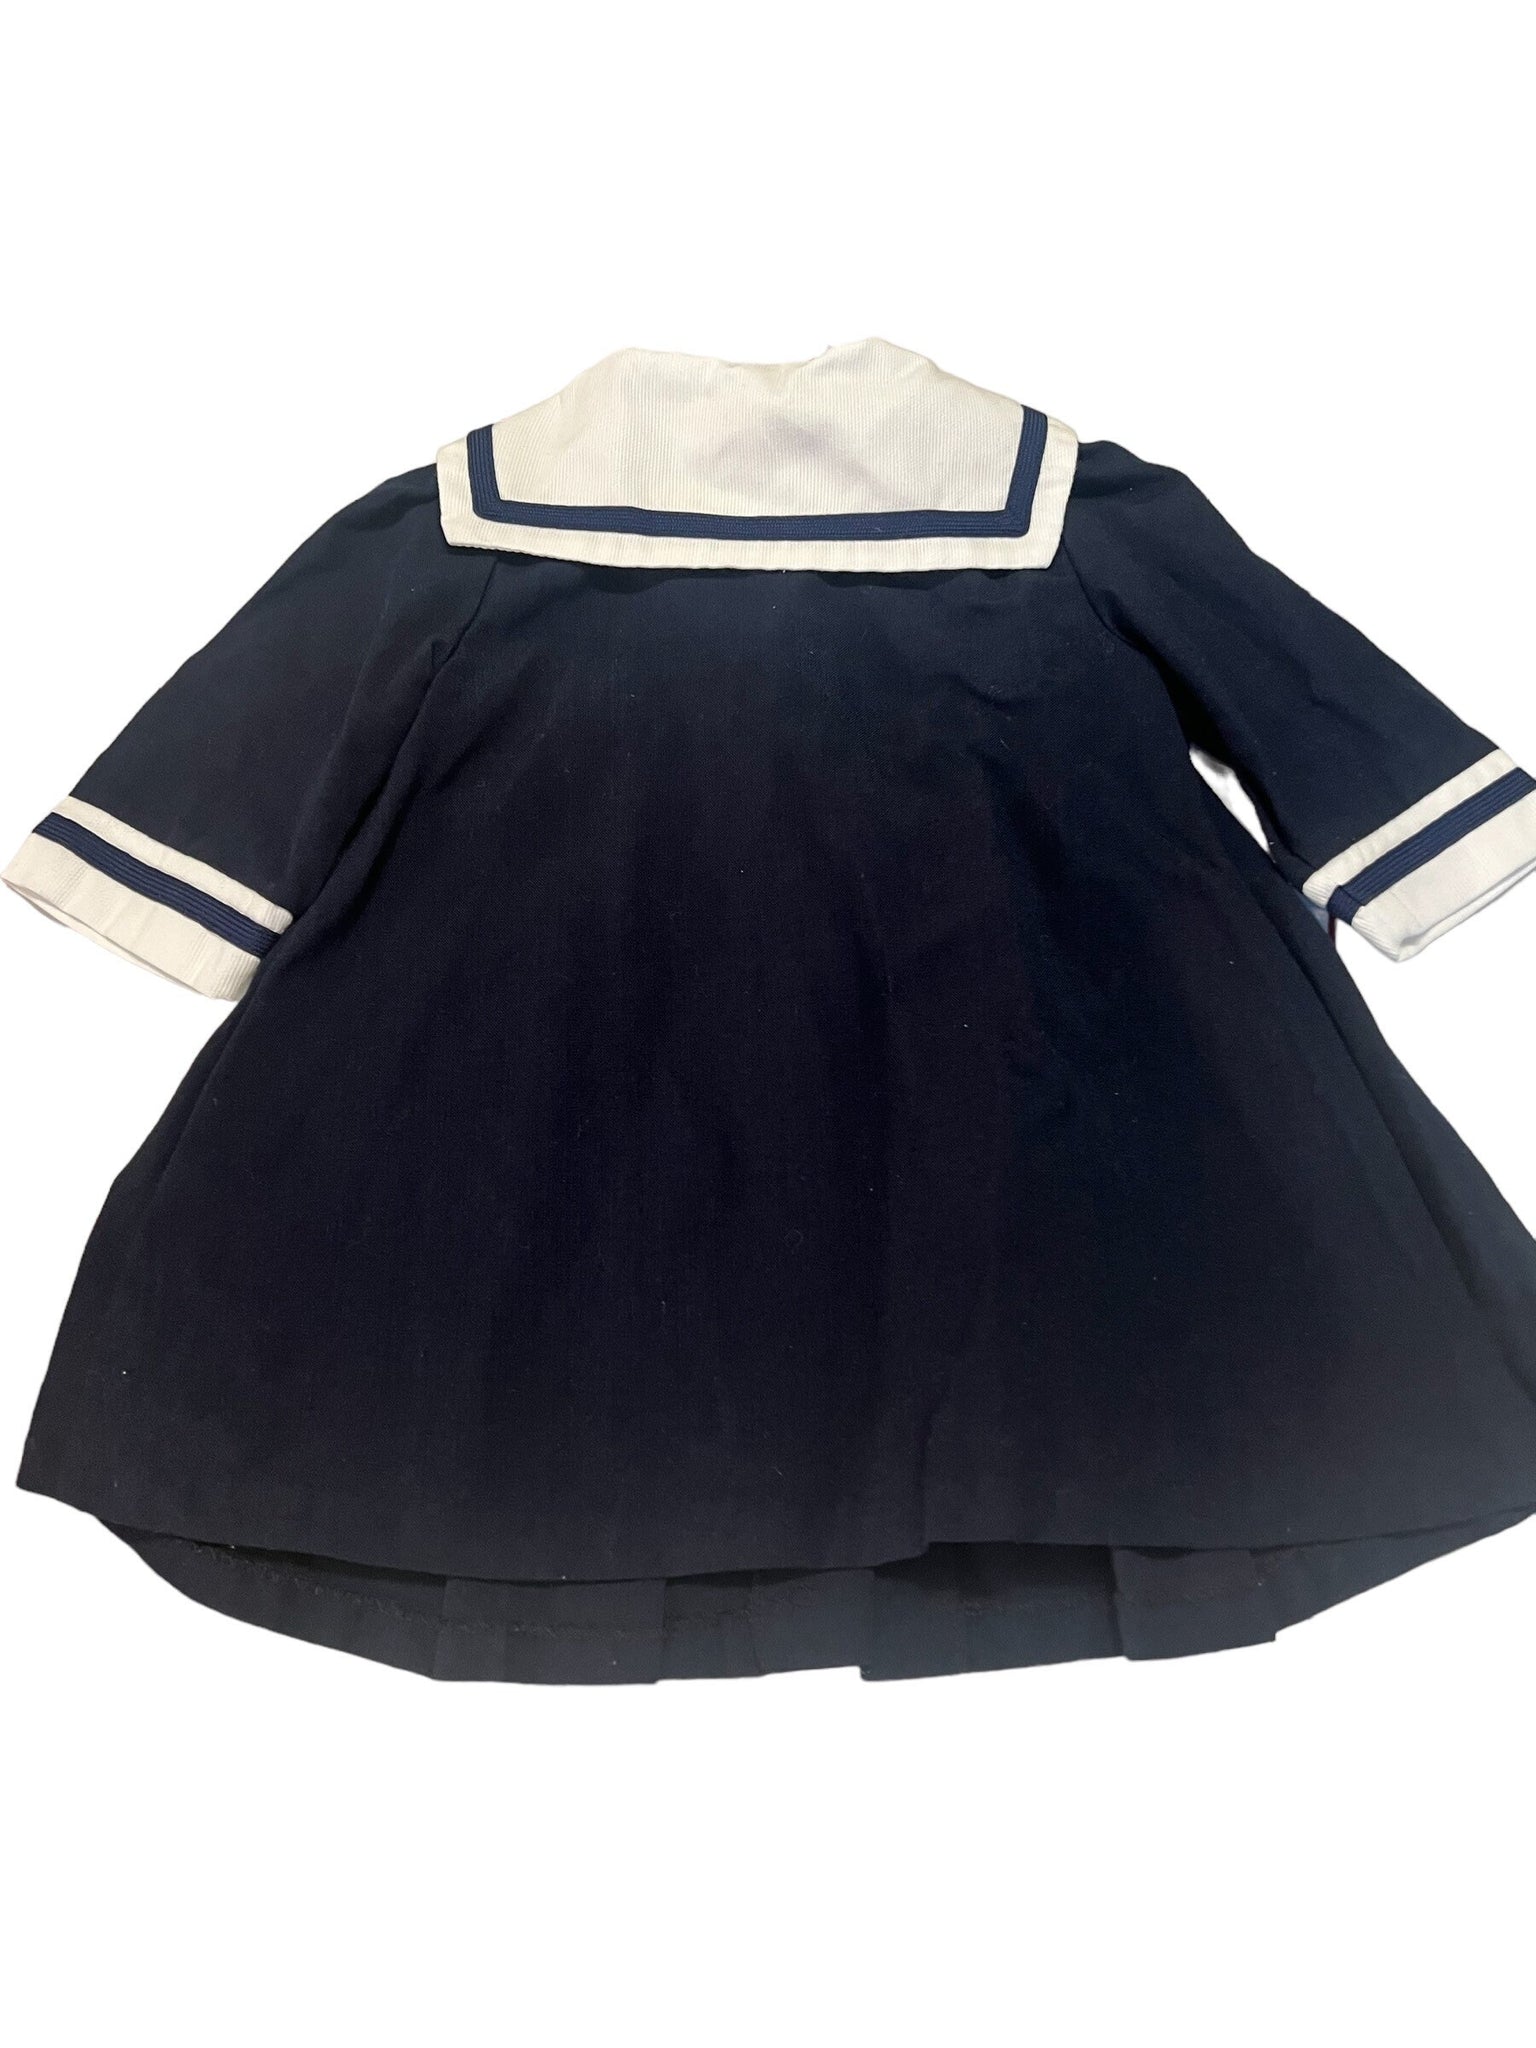 Vintage 80's baby sailor's dress 12 M Club Class